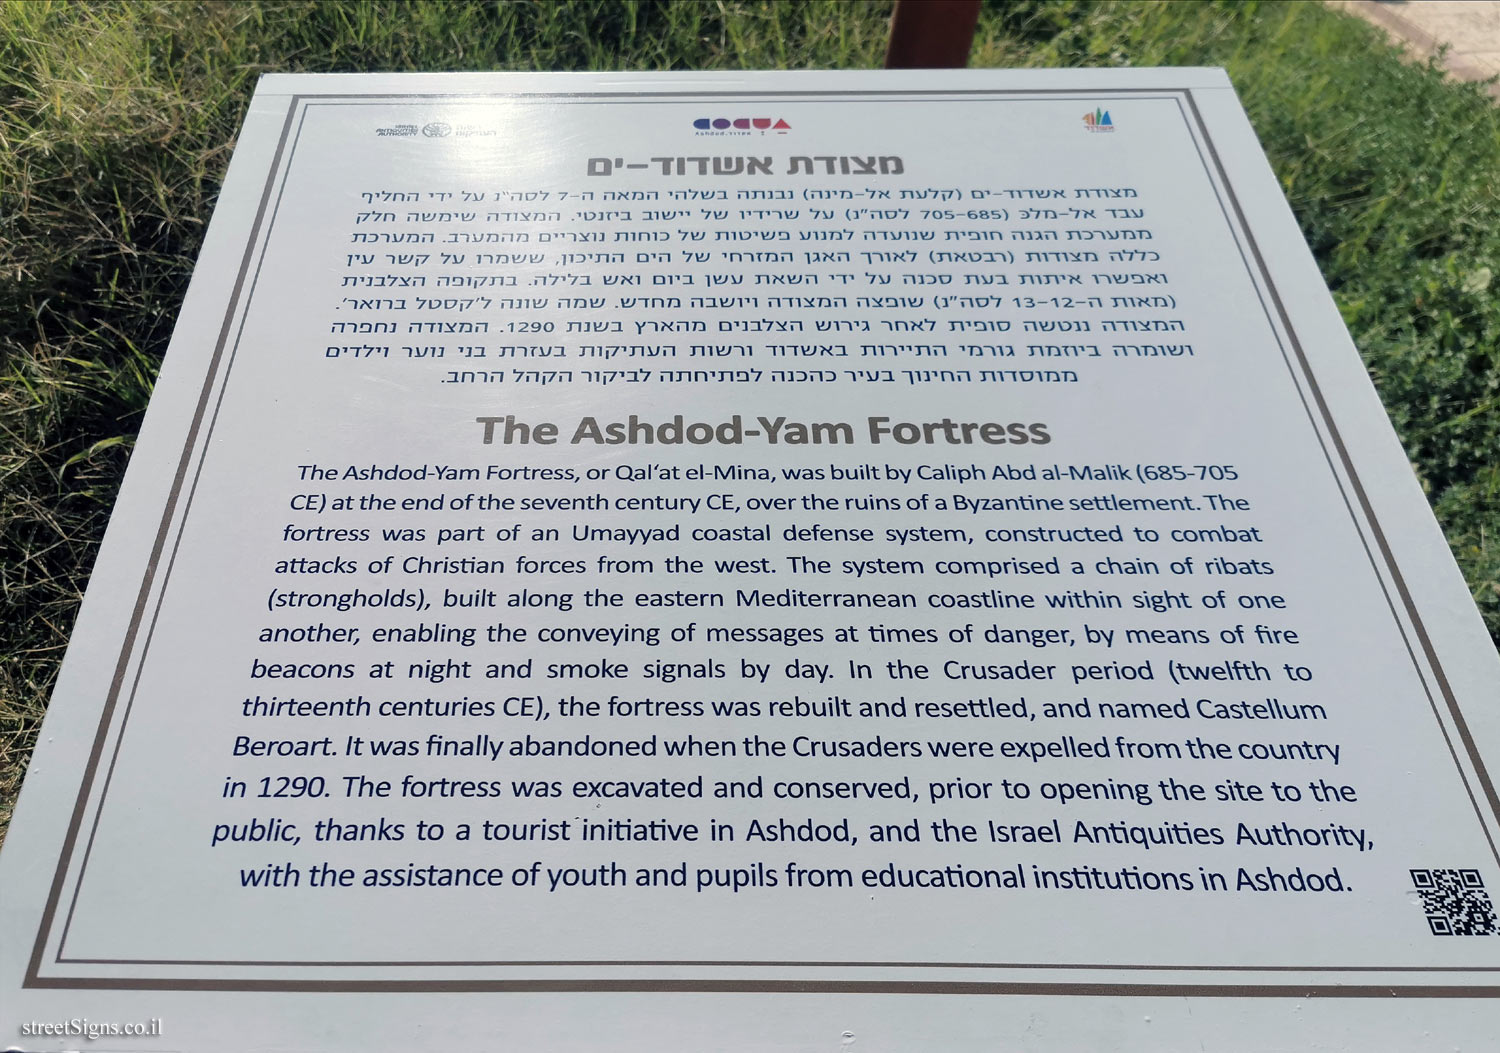 Ashdod - The Ashdod-Yam Fortress